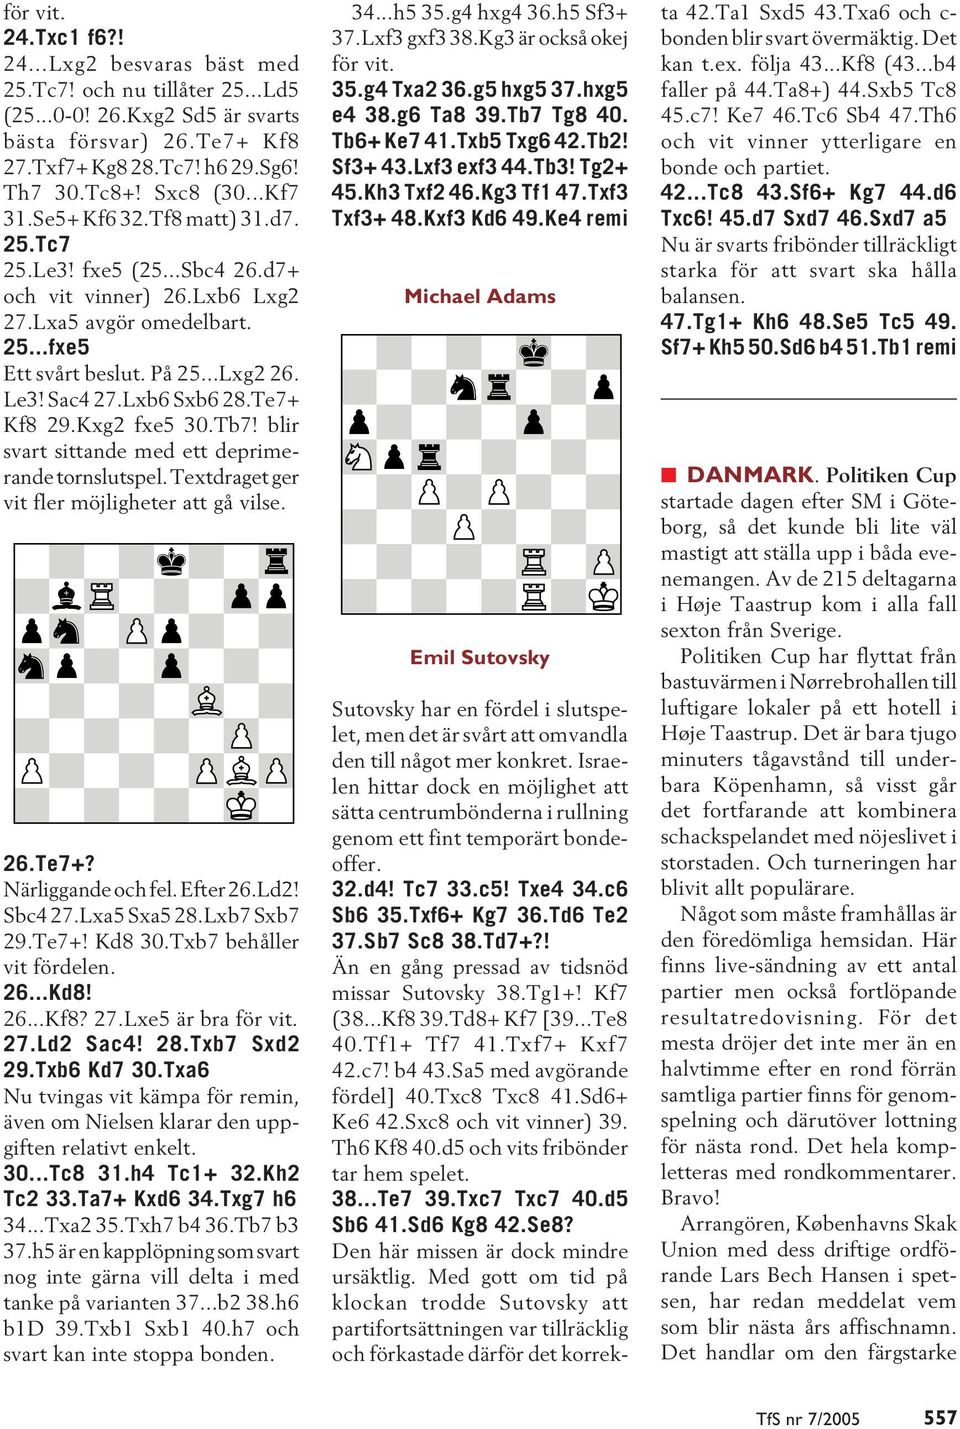 Lxb6 Sxb6 28.Te7+ Kf8 29.Kxg2 fxe5 30.Tb7! blir svart sittande med ett deprimerande tornslutspel. Textdraget ger vit fler möjligheter att gå vilse. 26.Te7+? Närliggande och fel. Efter 26.Ld2! Sbc4 27.